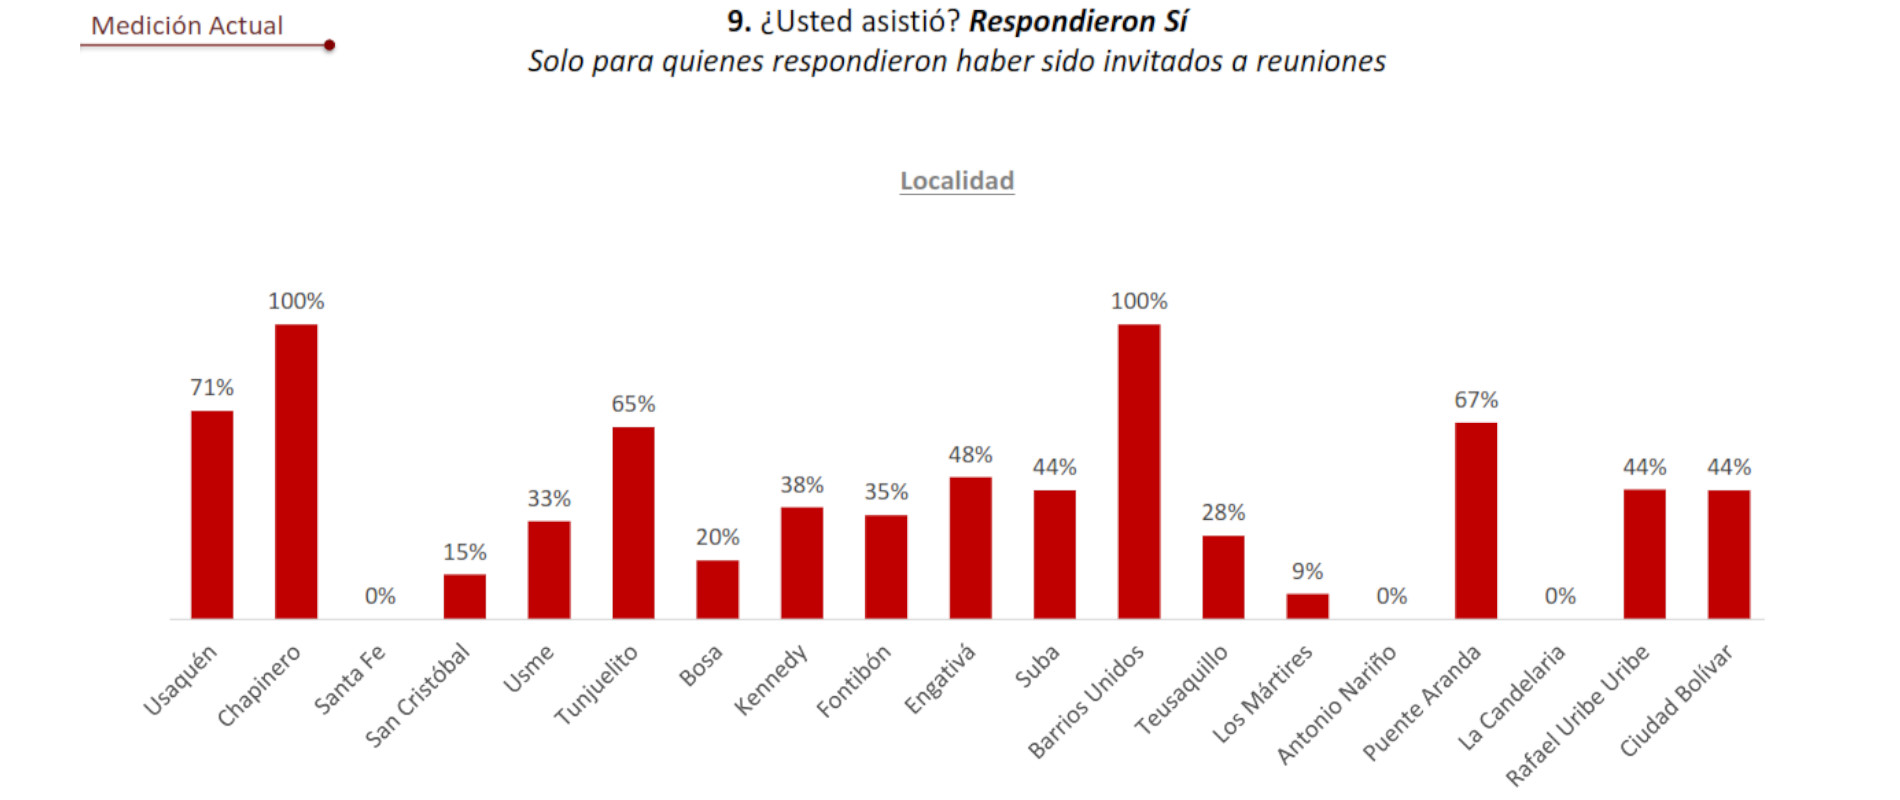 Chapinero, Barrios Unidos y Usaquén fueron las localidades en las que más asistieron a reuniones los ciudadanos en diciembre. Imagen: Gráfico elaborado por la Alcaldía de Bogotá.